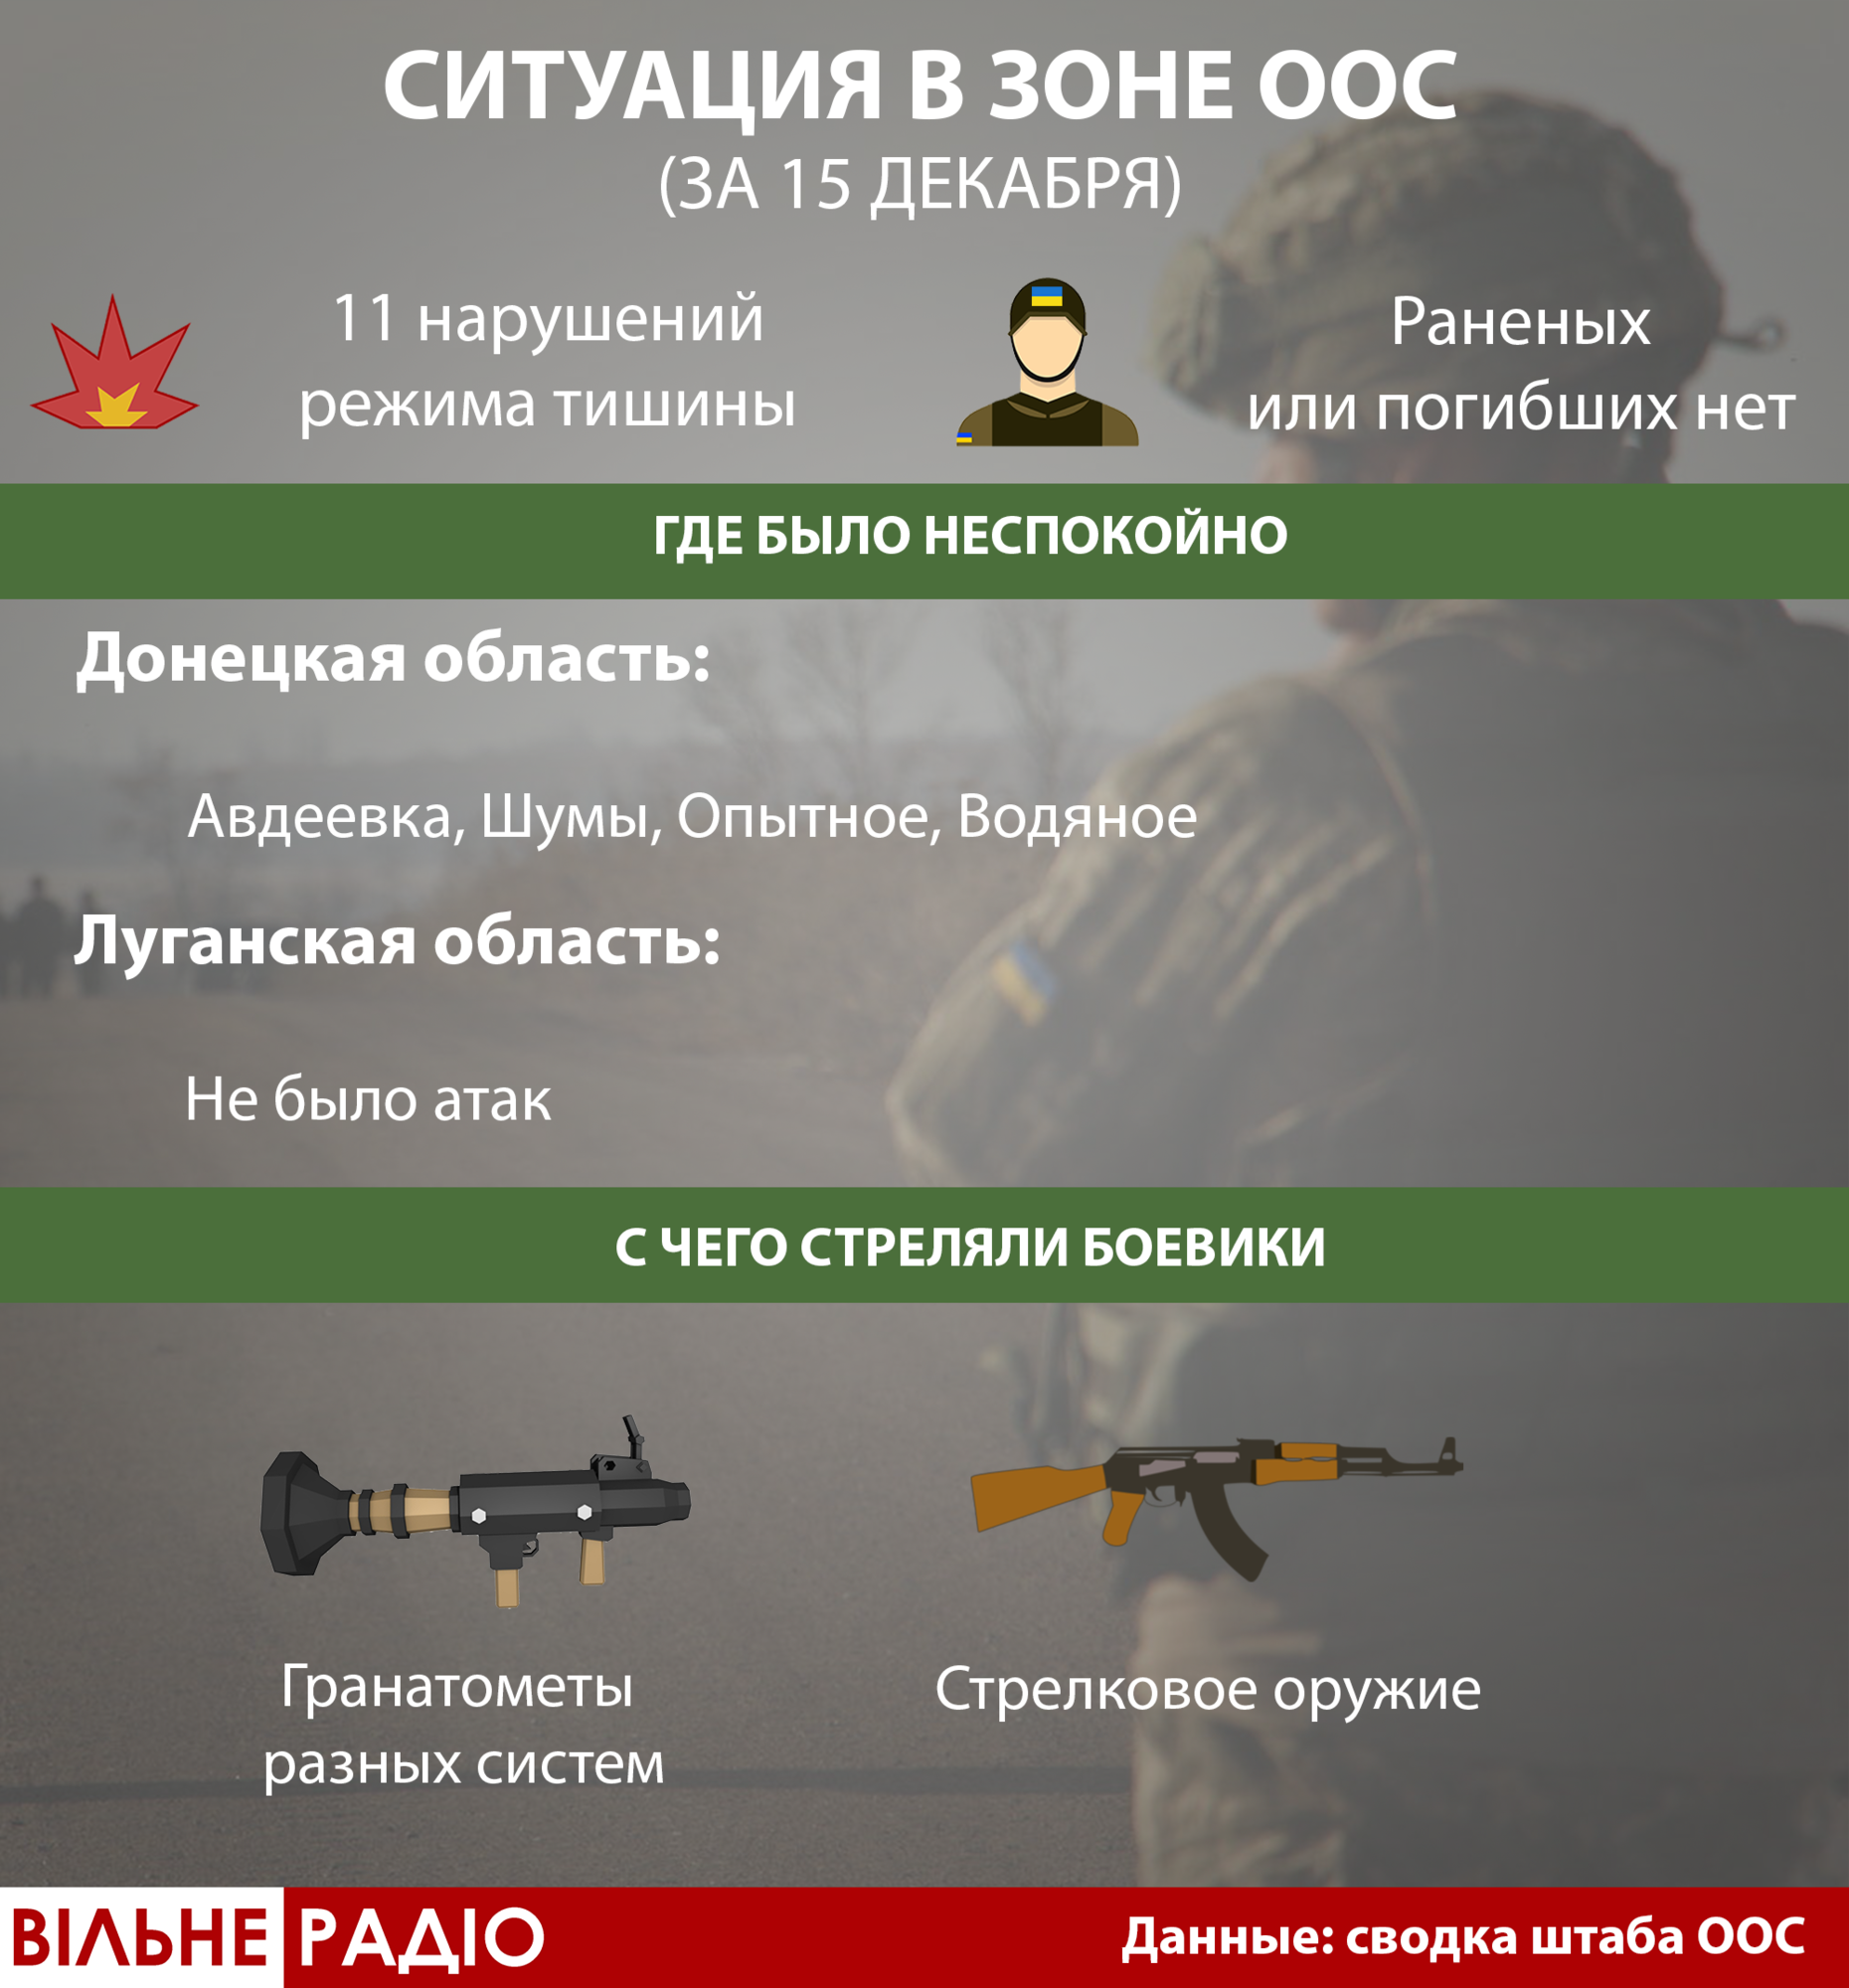 Сутки на Донбассе: штаб ООС отчитывается о “неприцельных” 11 атаках. А волонтеры говорят о раненом в голову бойце 1